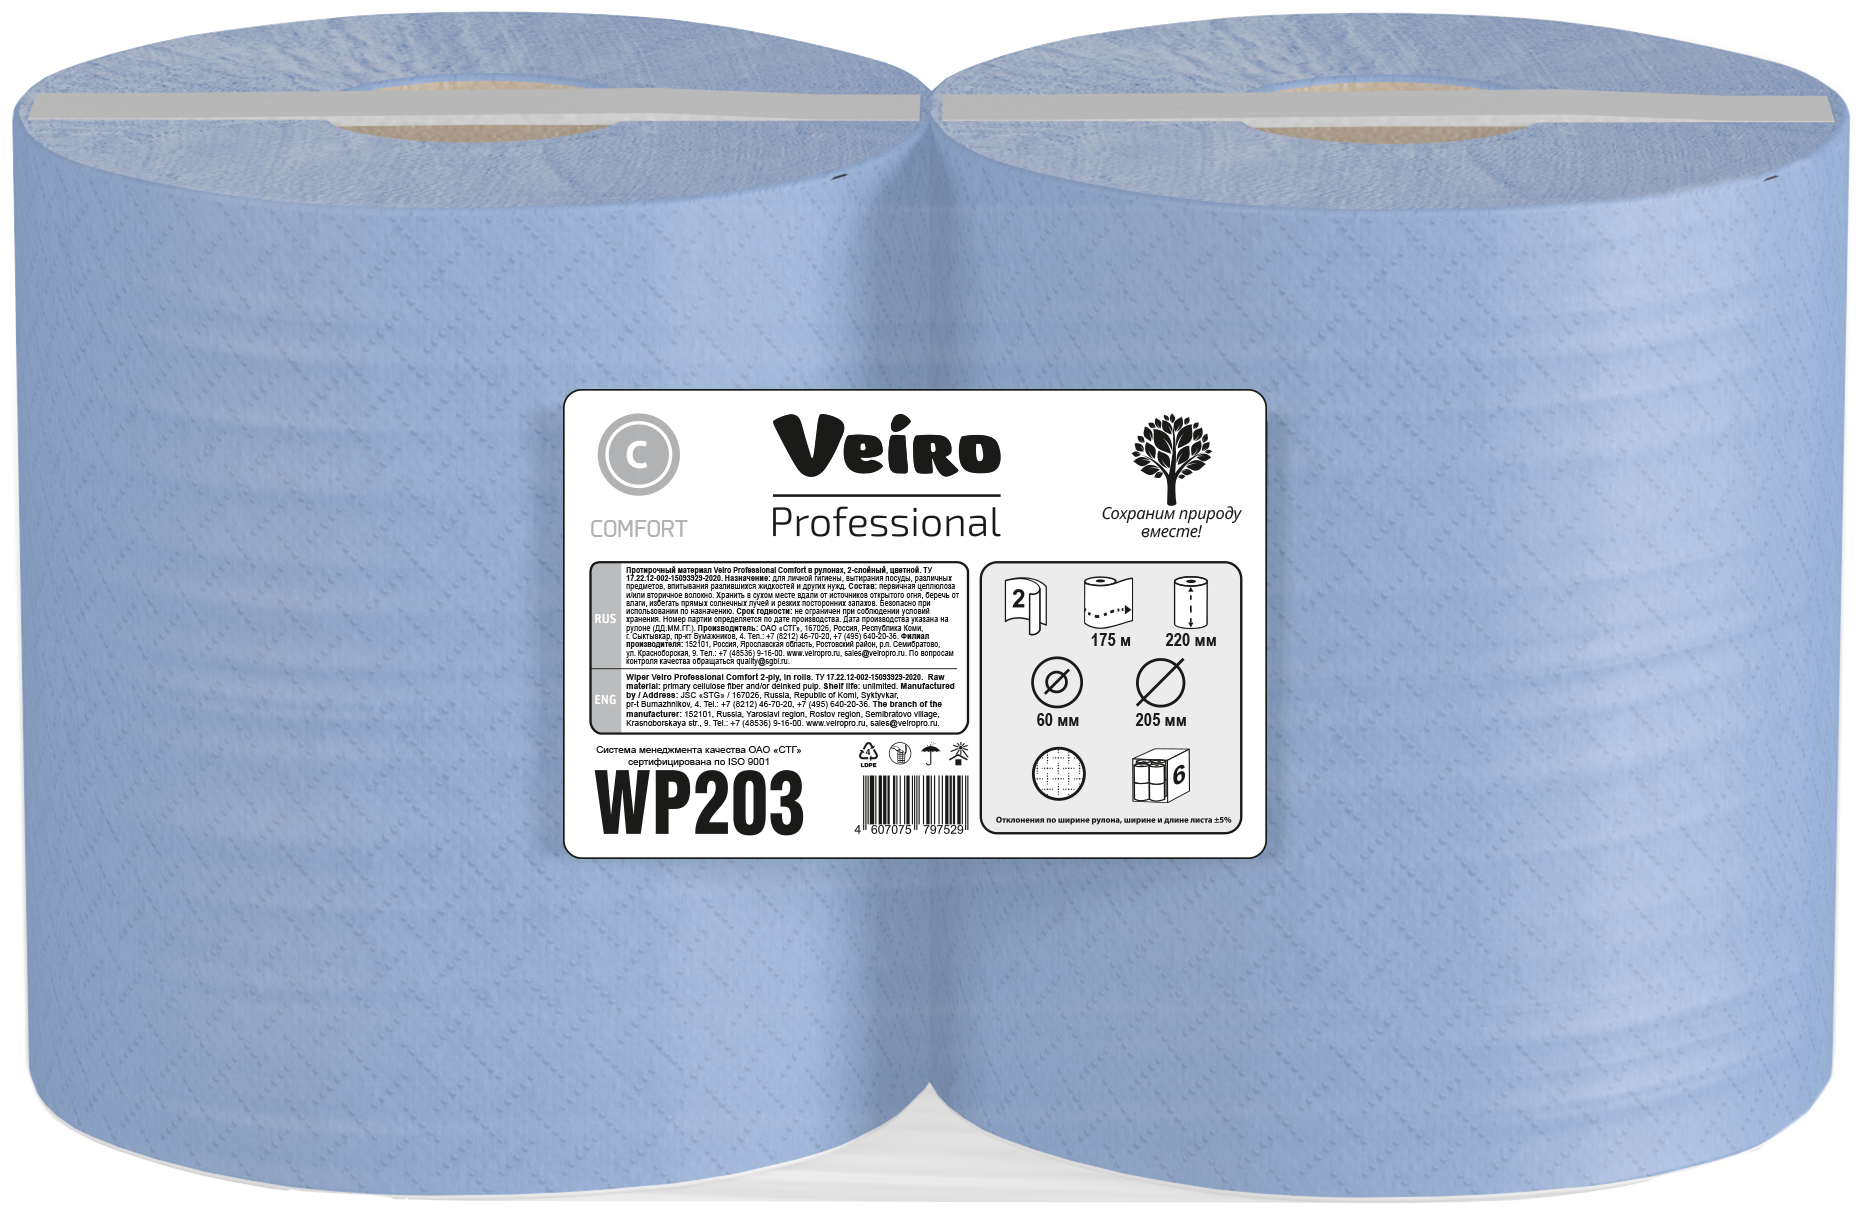 Бумага протирочная Veiro Professional Comfort с центральной вытяжкой 175 м, 240х350 мм, 2 слоя, синяя